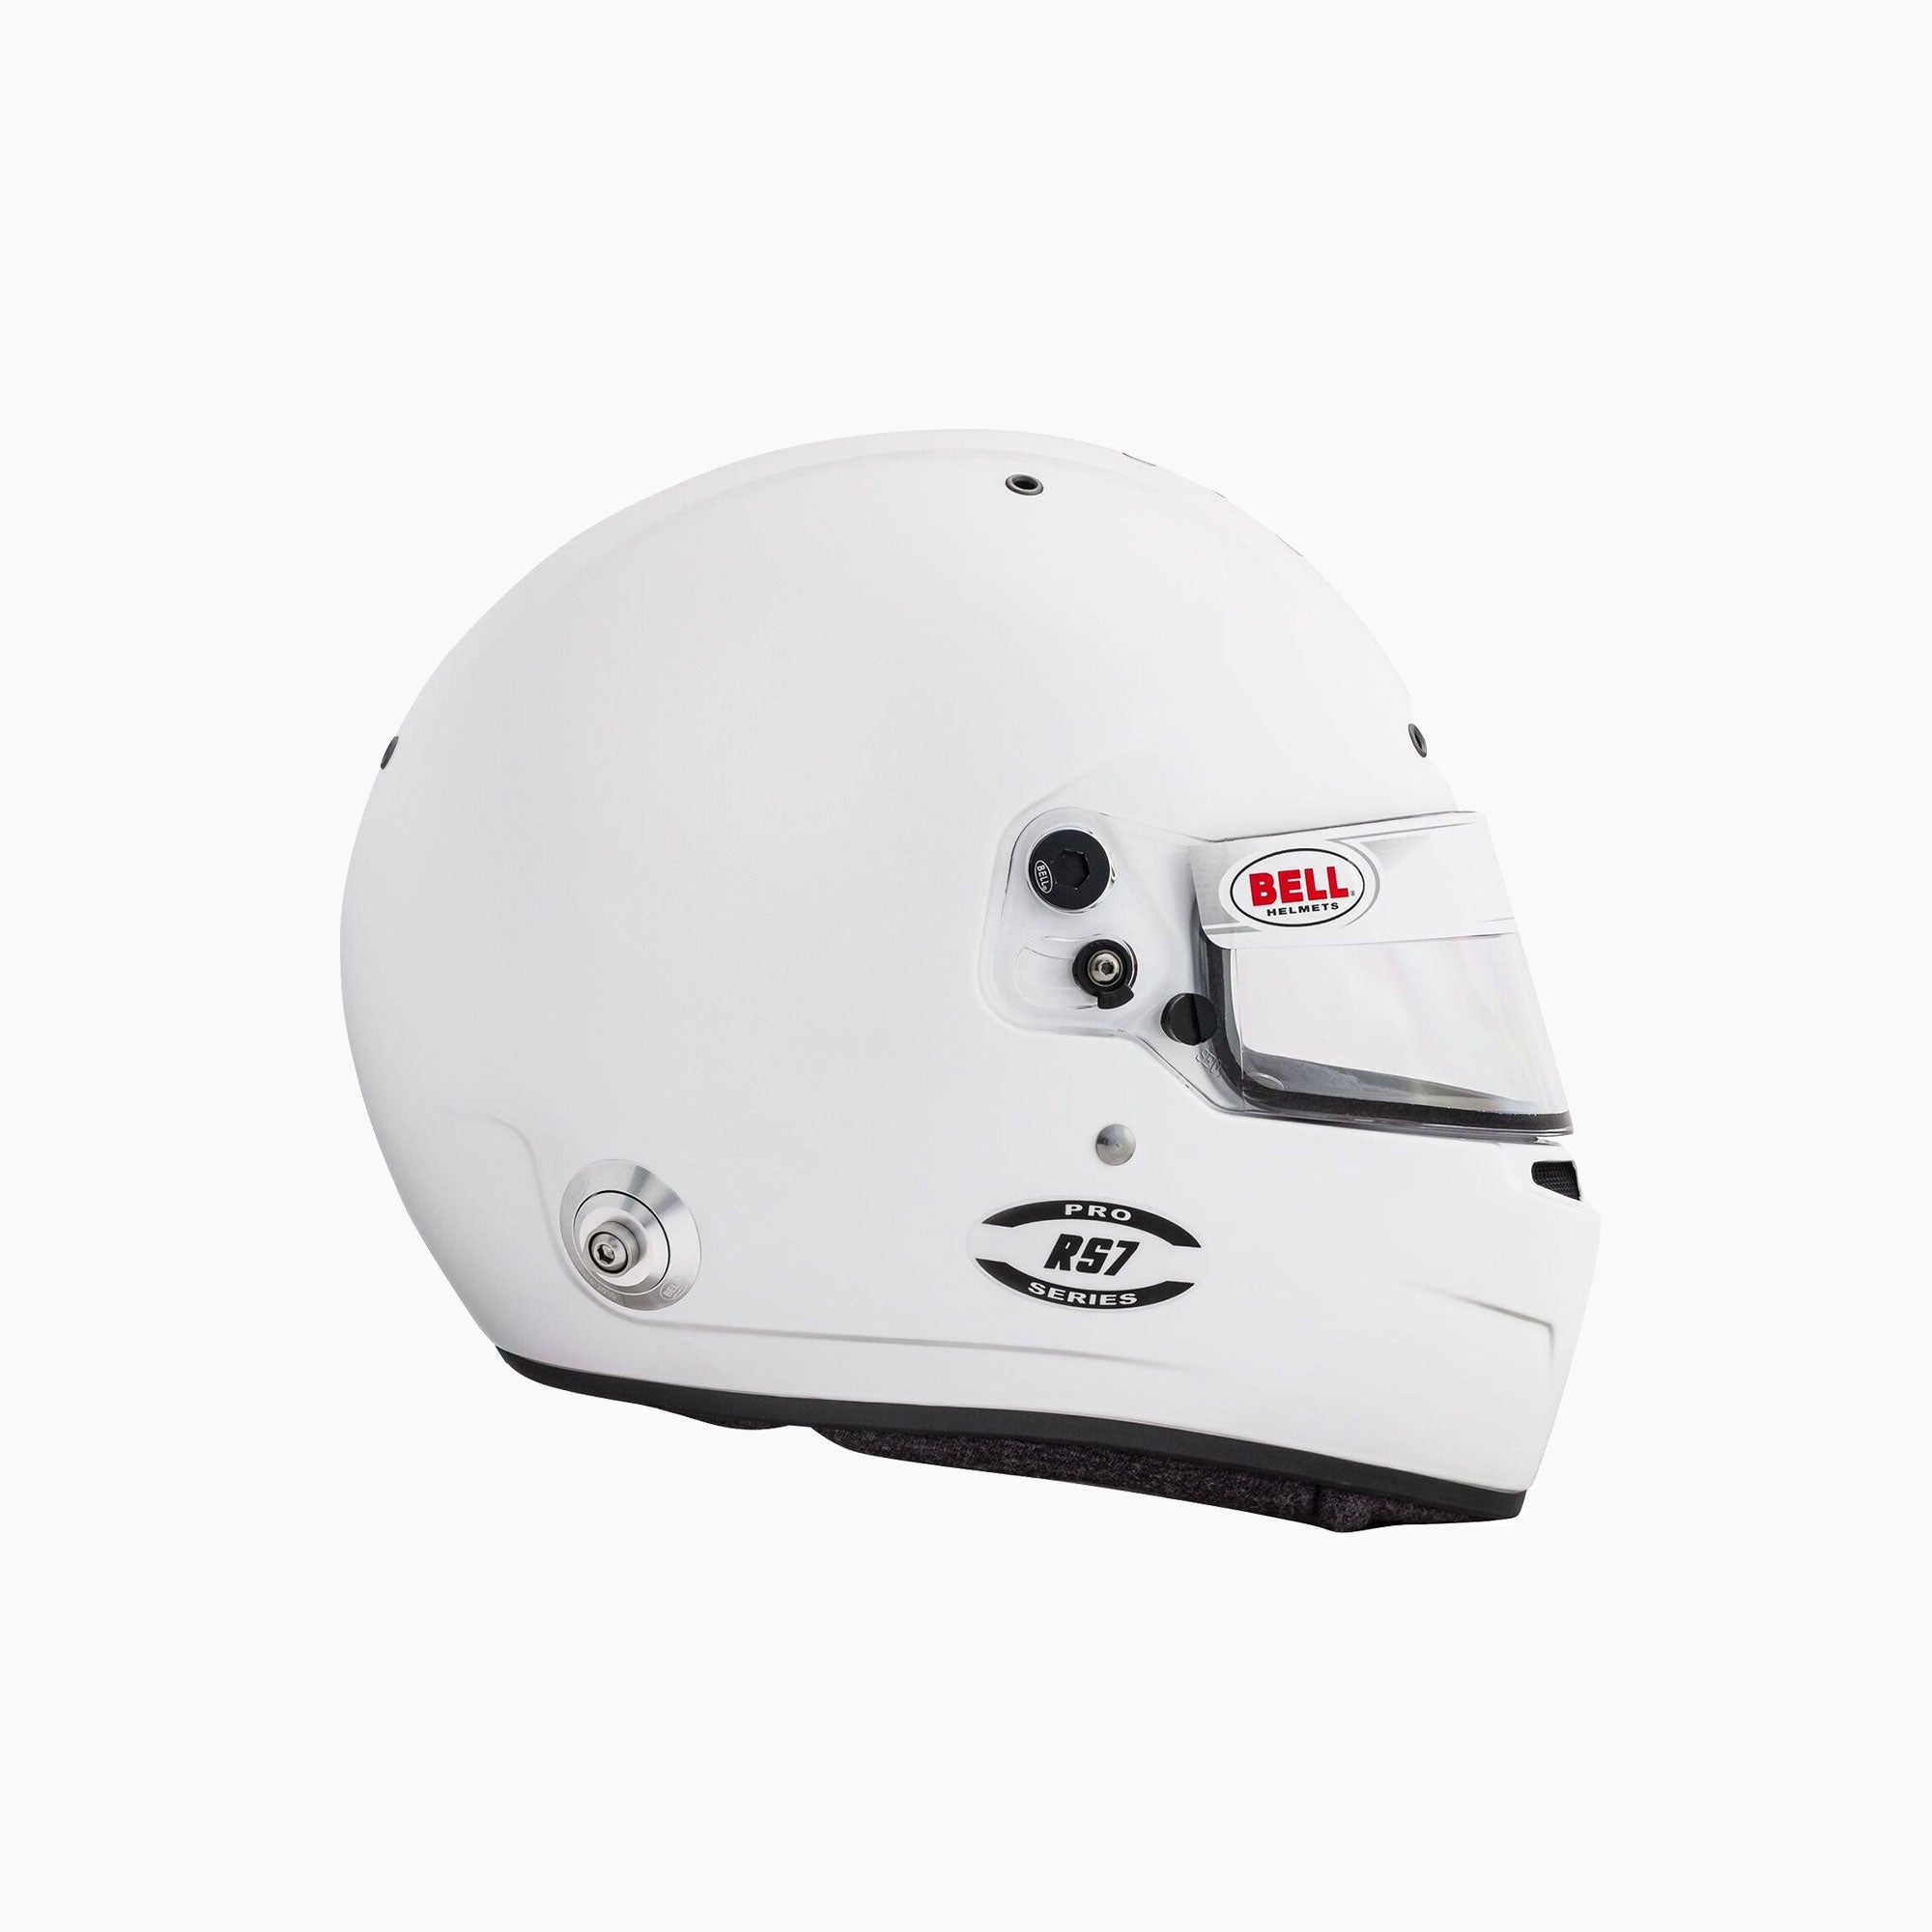 Bell Racing | RS7 Pro (HANS) Racing Helmet-Racing Helmet-Bell Racing-gpx-store